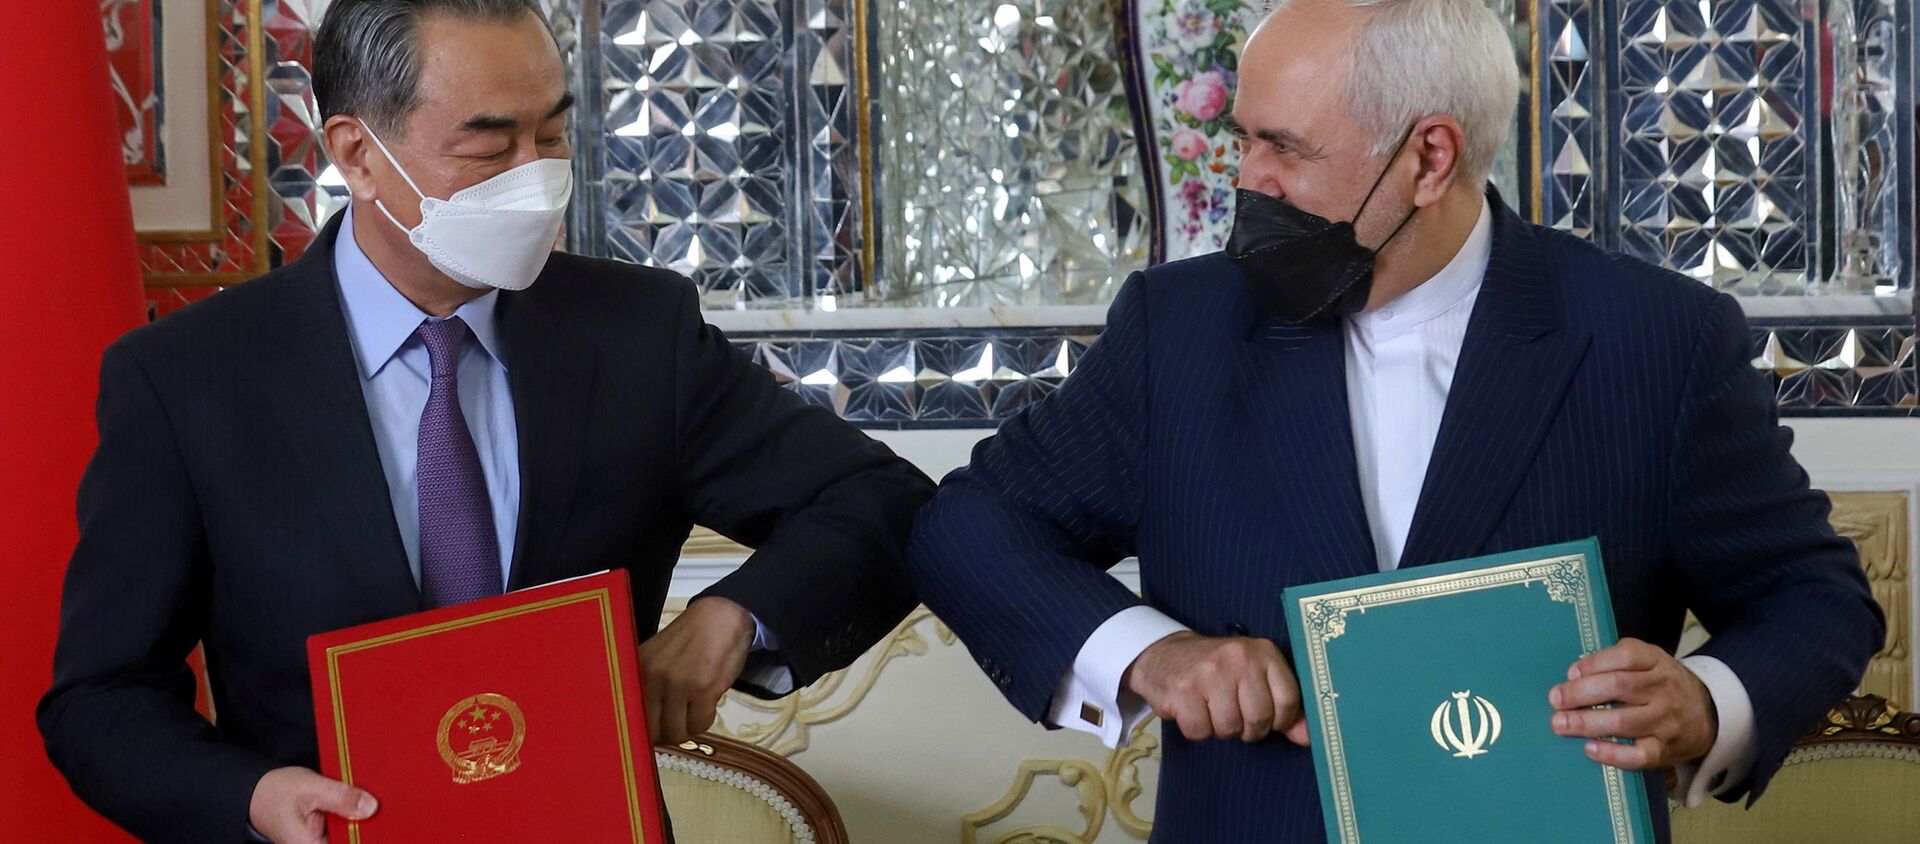 Bộ trưởng Ngoại giao Trung Quốc Vương Nghị và Bộ trưởng Ngoại giao Iran Mohammad Javad Zarif tại lễ ký kết thỏa thuận hợp tác 25 năm ở Tehran. - Sputnik Việt Nam, 1920, 30.03.2021